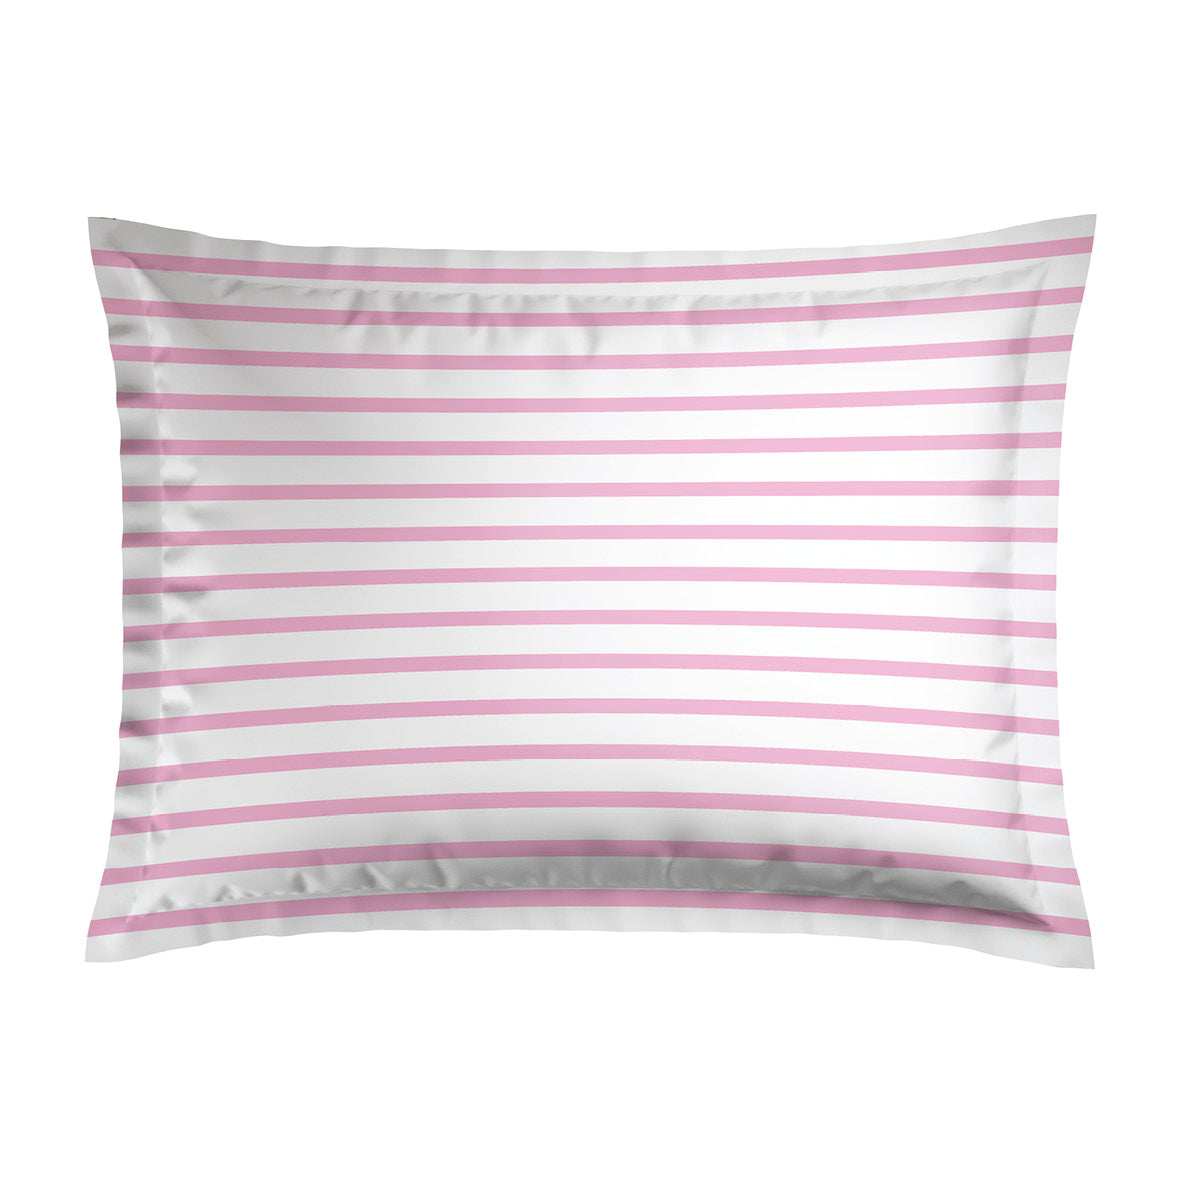 Pillowcase(s) cotton satin - Horizon Pink 2 x (80 x 80 cm)